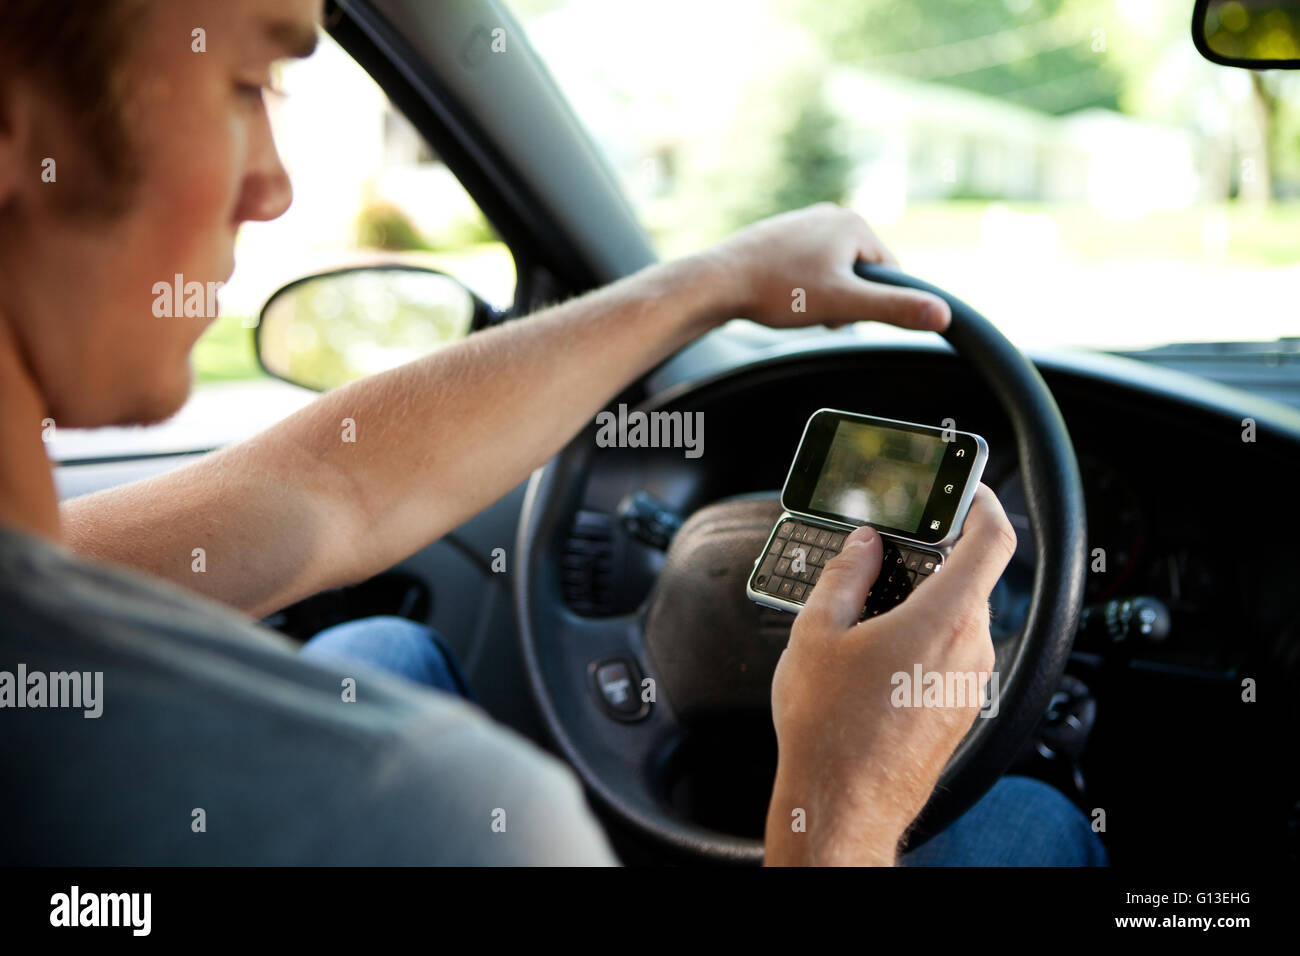 Serie mit zwei Teenager in einem Auto fahren.  Beinhaltet eine Vielzahl von Bildern mit SMS und Cel Handys während der Fahrt betrachten. Stockfoto